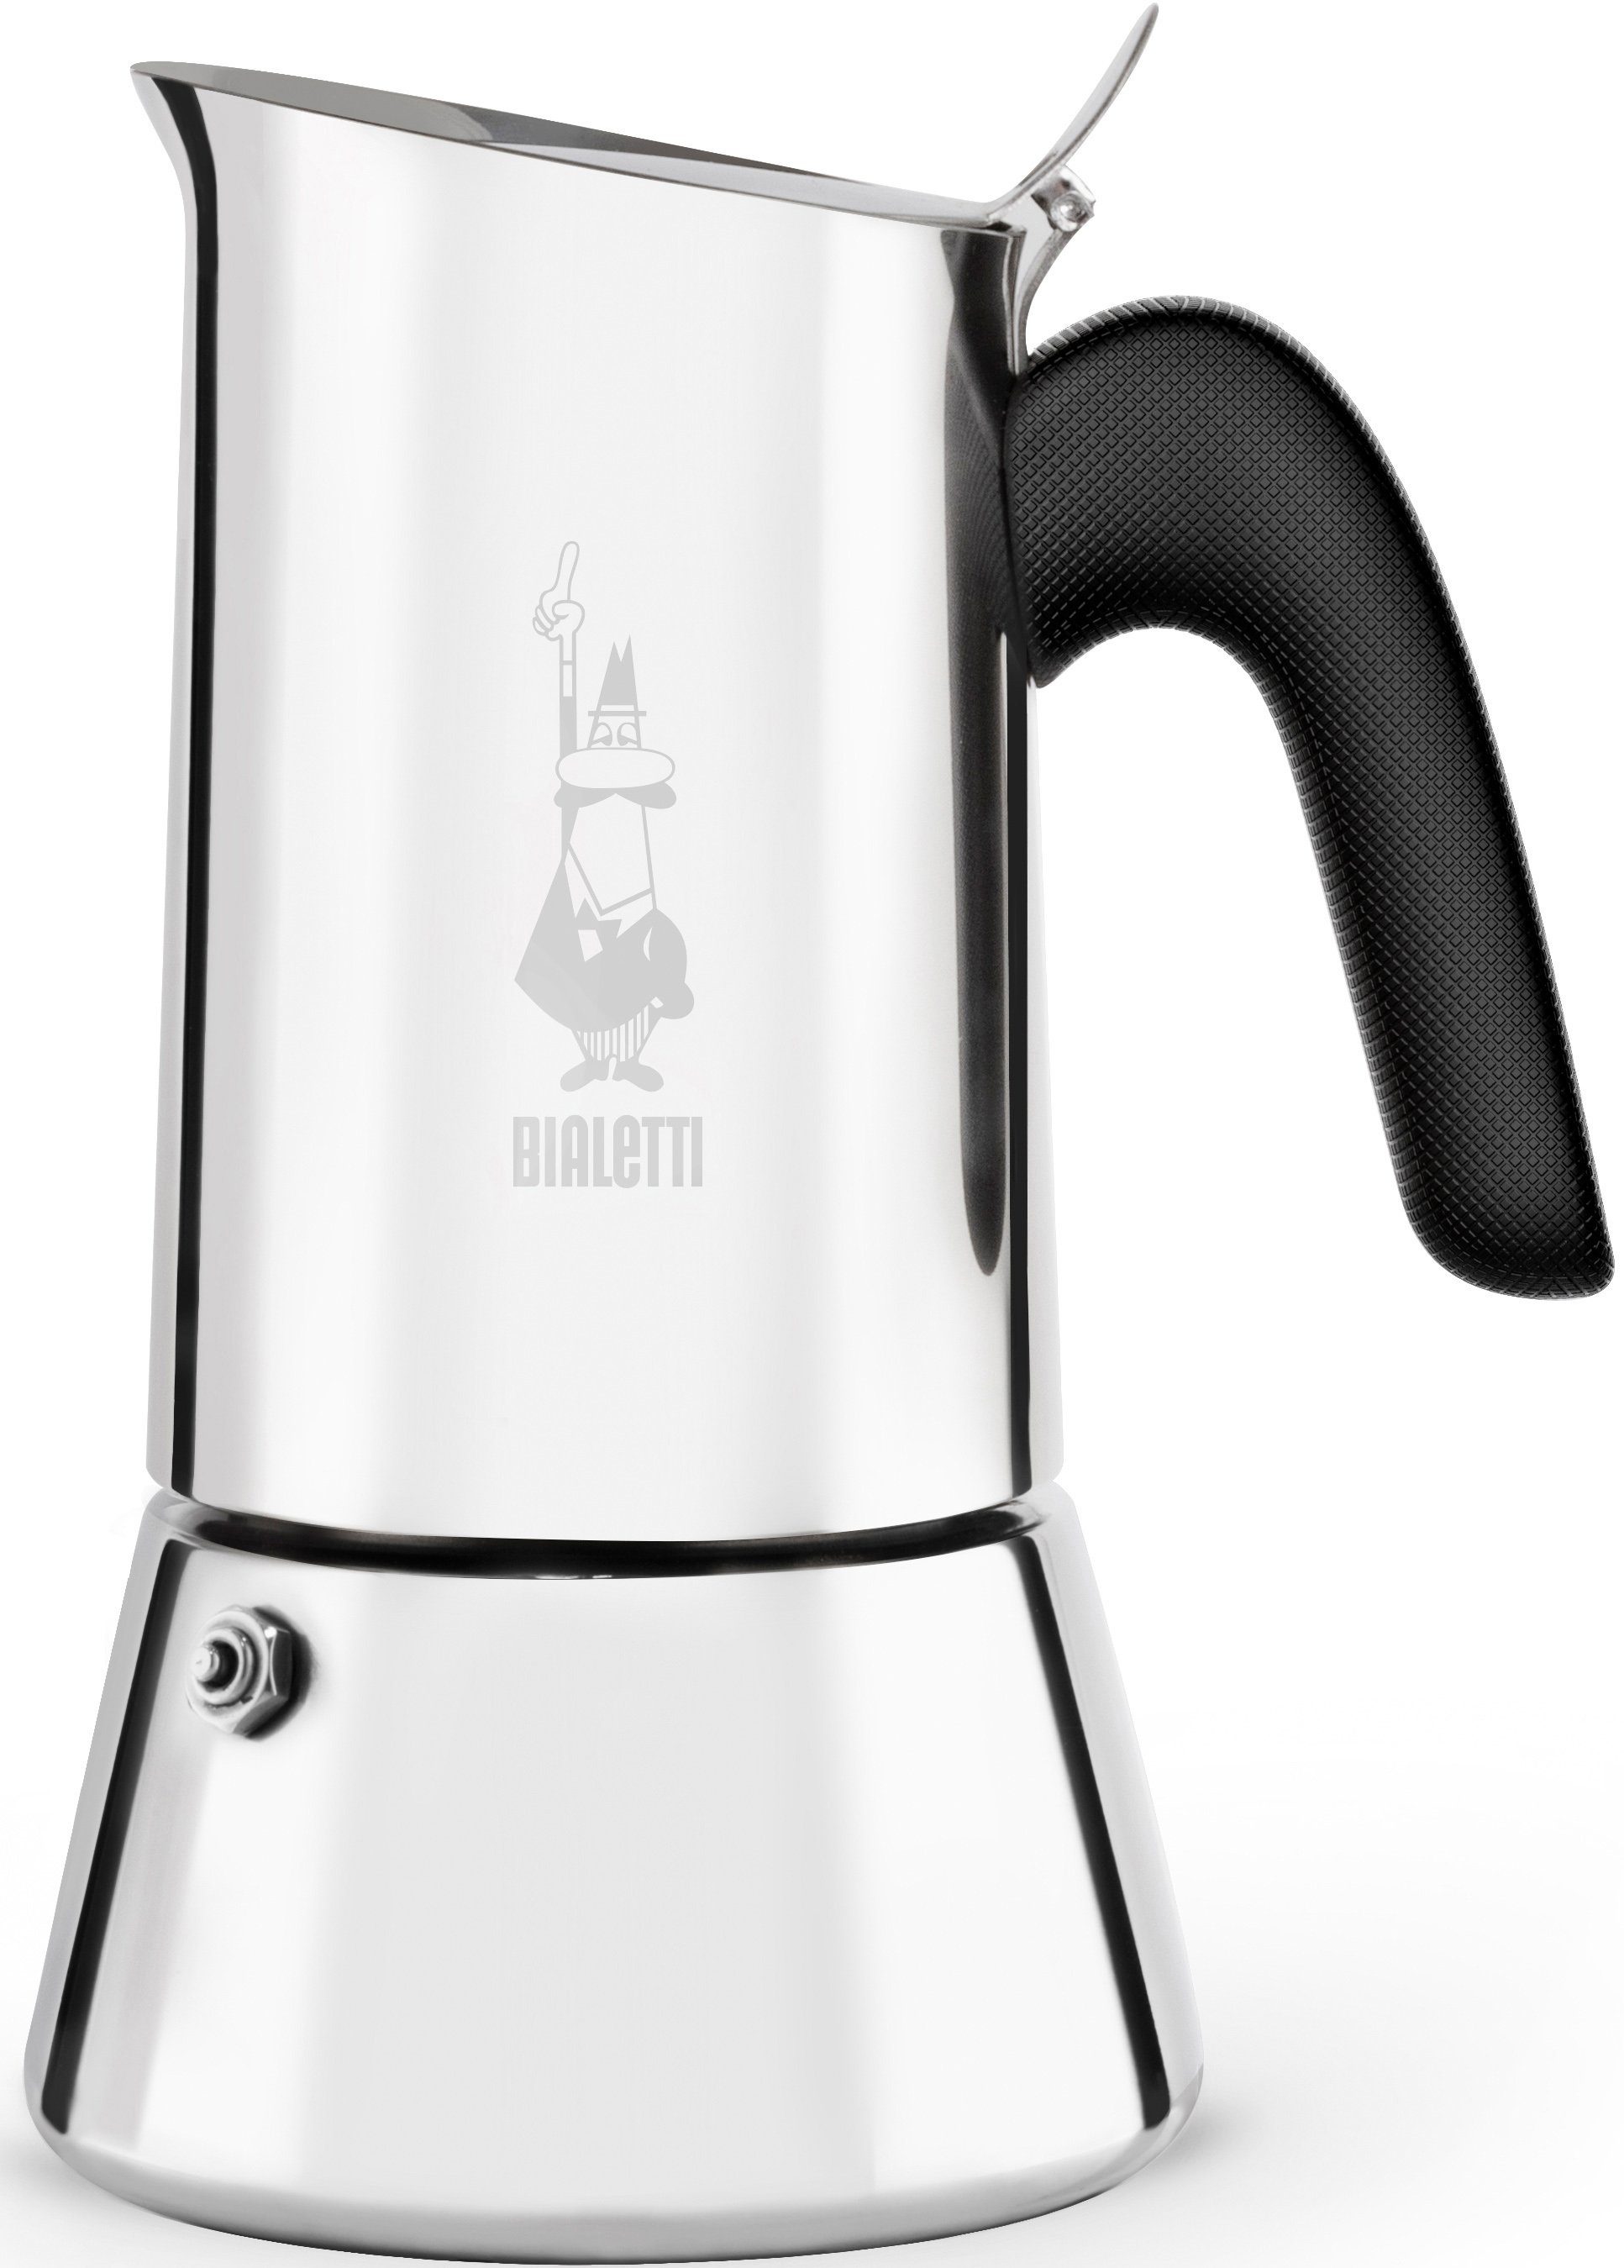 BIALETTI Espressokocher Venus, 0,23l Kaffeekanne, Edelstahl, 6 Tassen | French Press